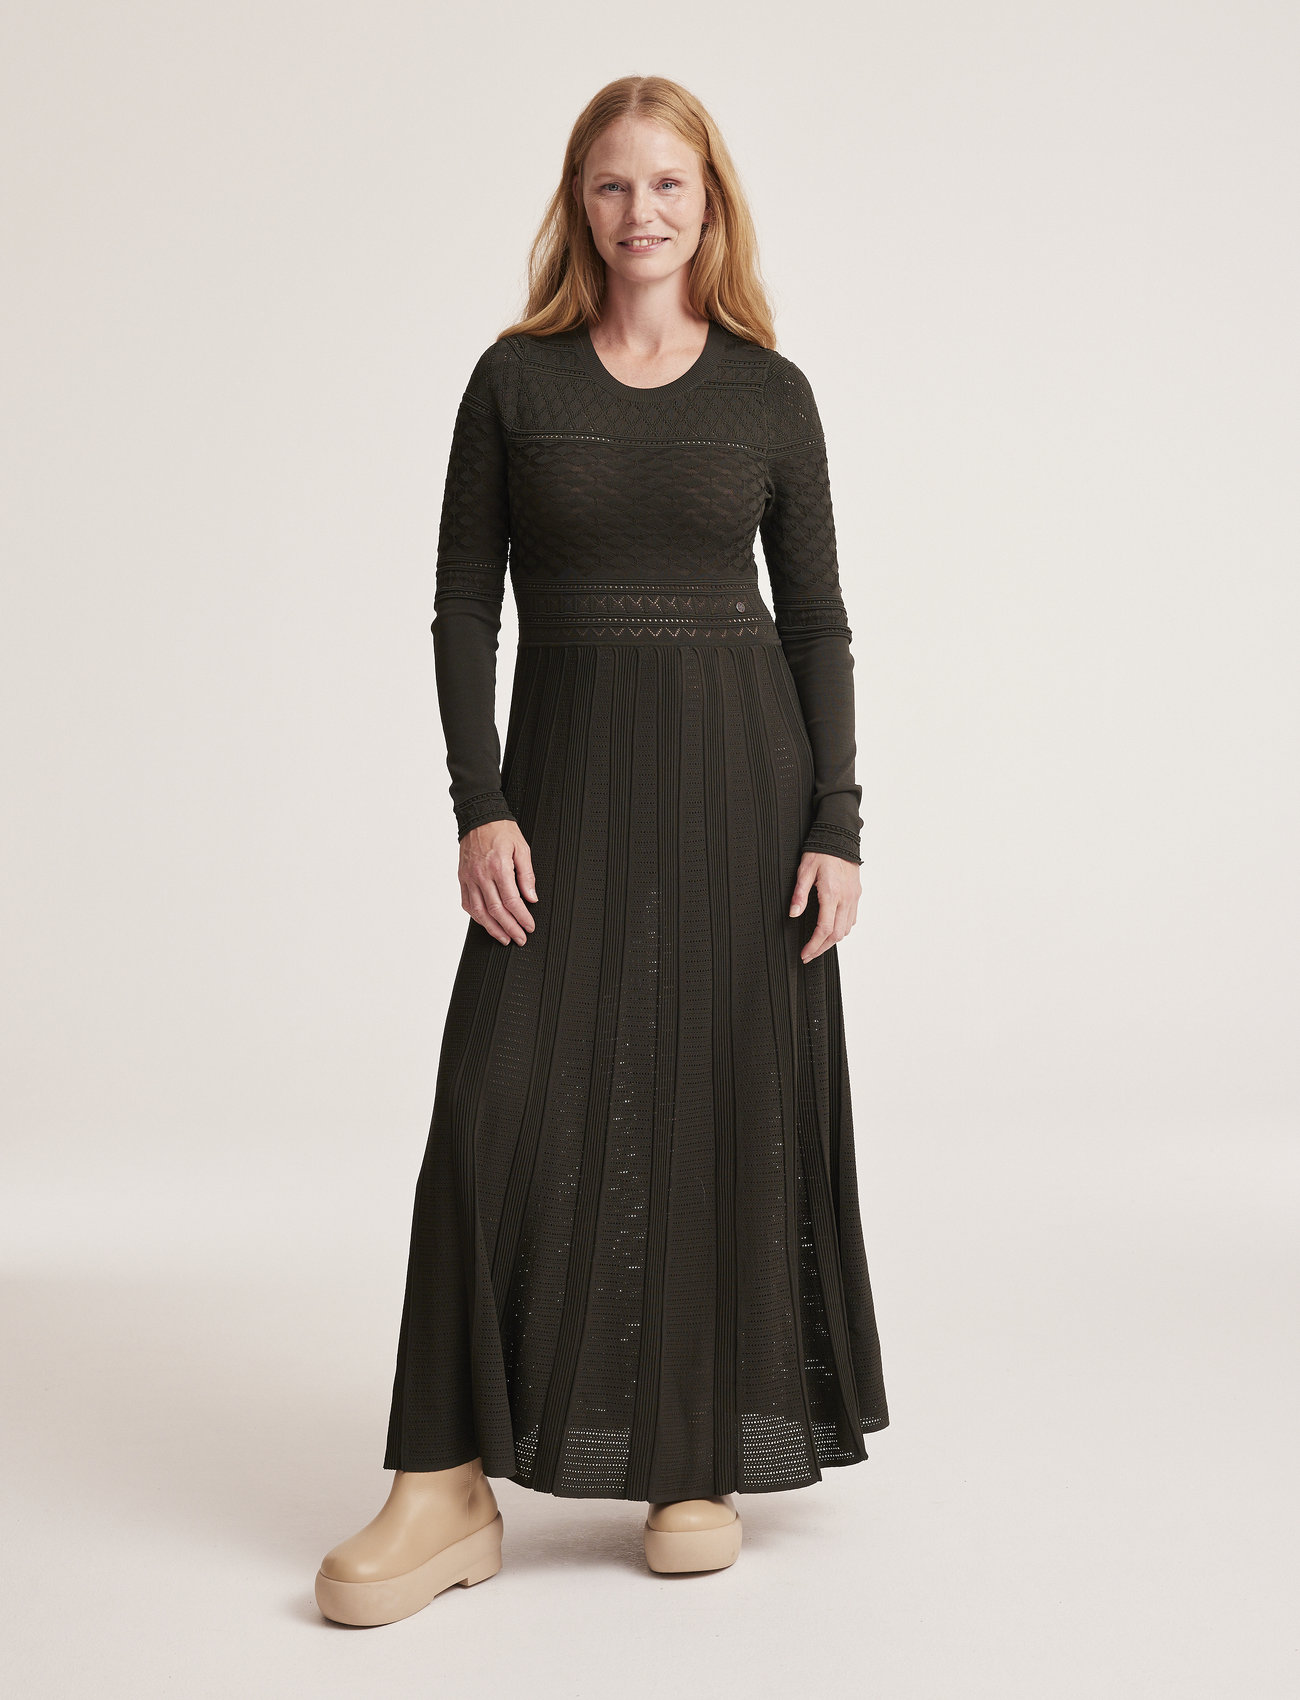 ODD MOLLY - Janice Knitted Dress - odzież imprezowa w cenach outletowych - hunter green - 1